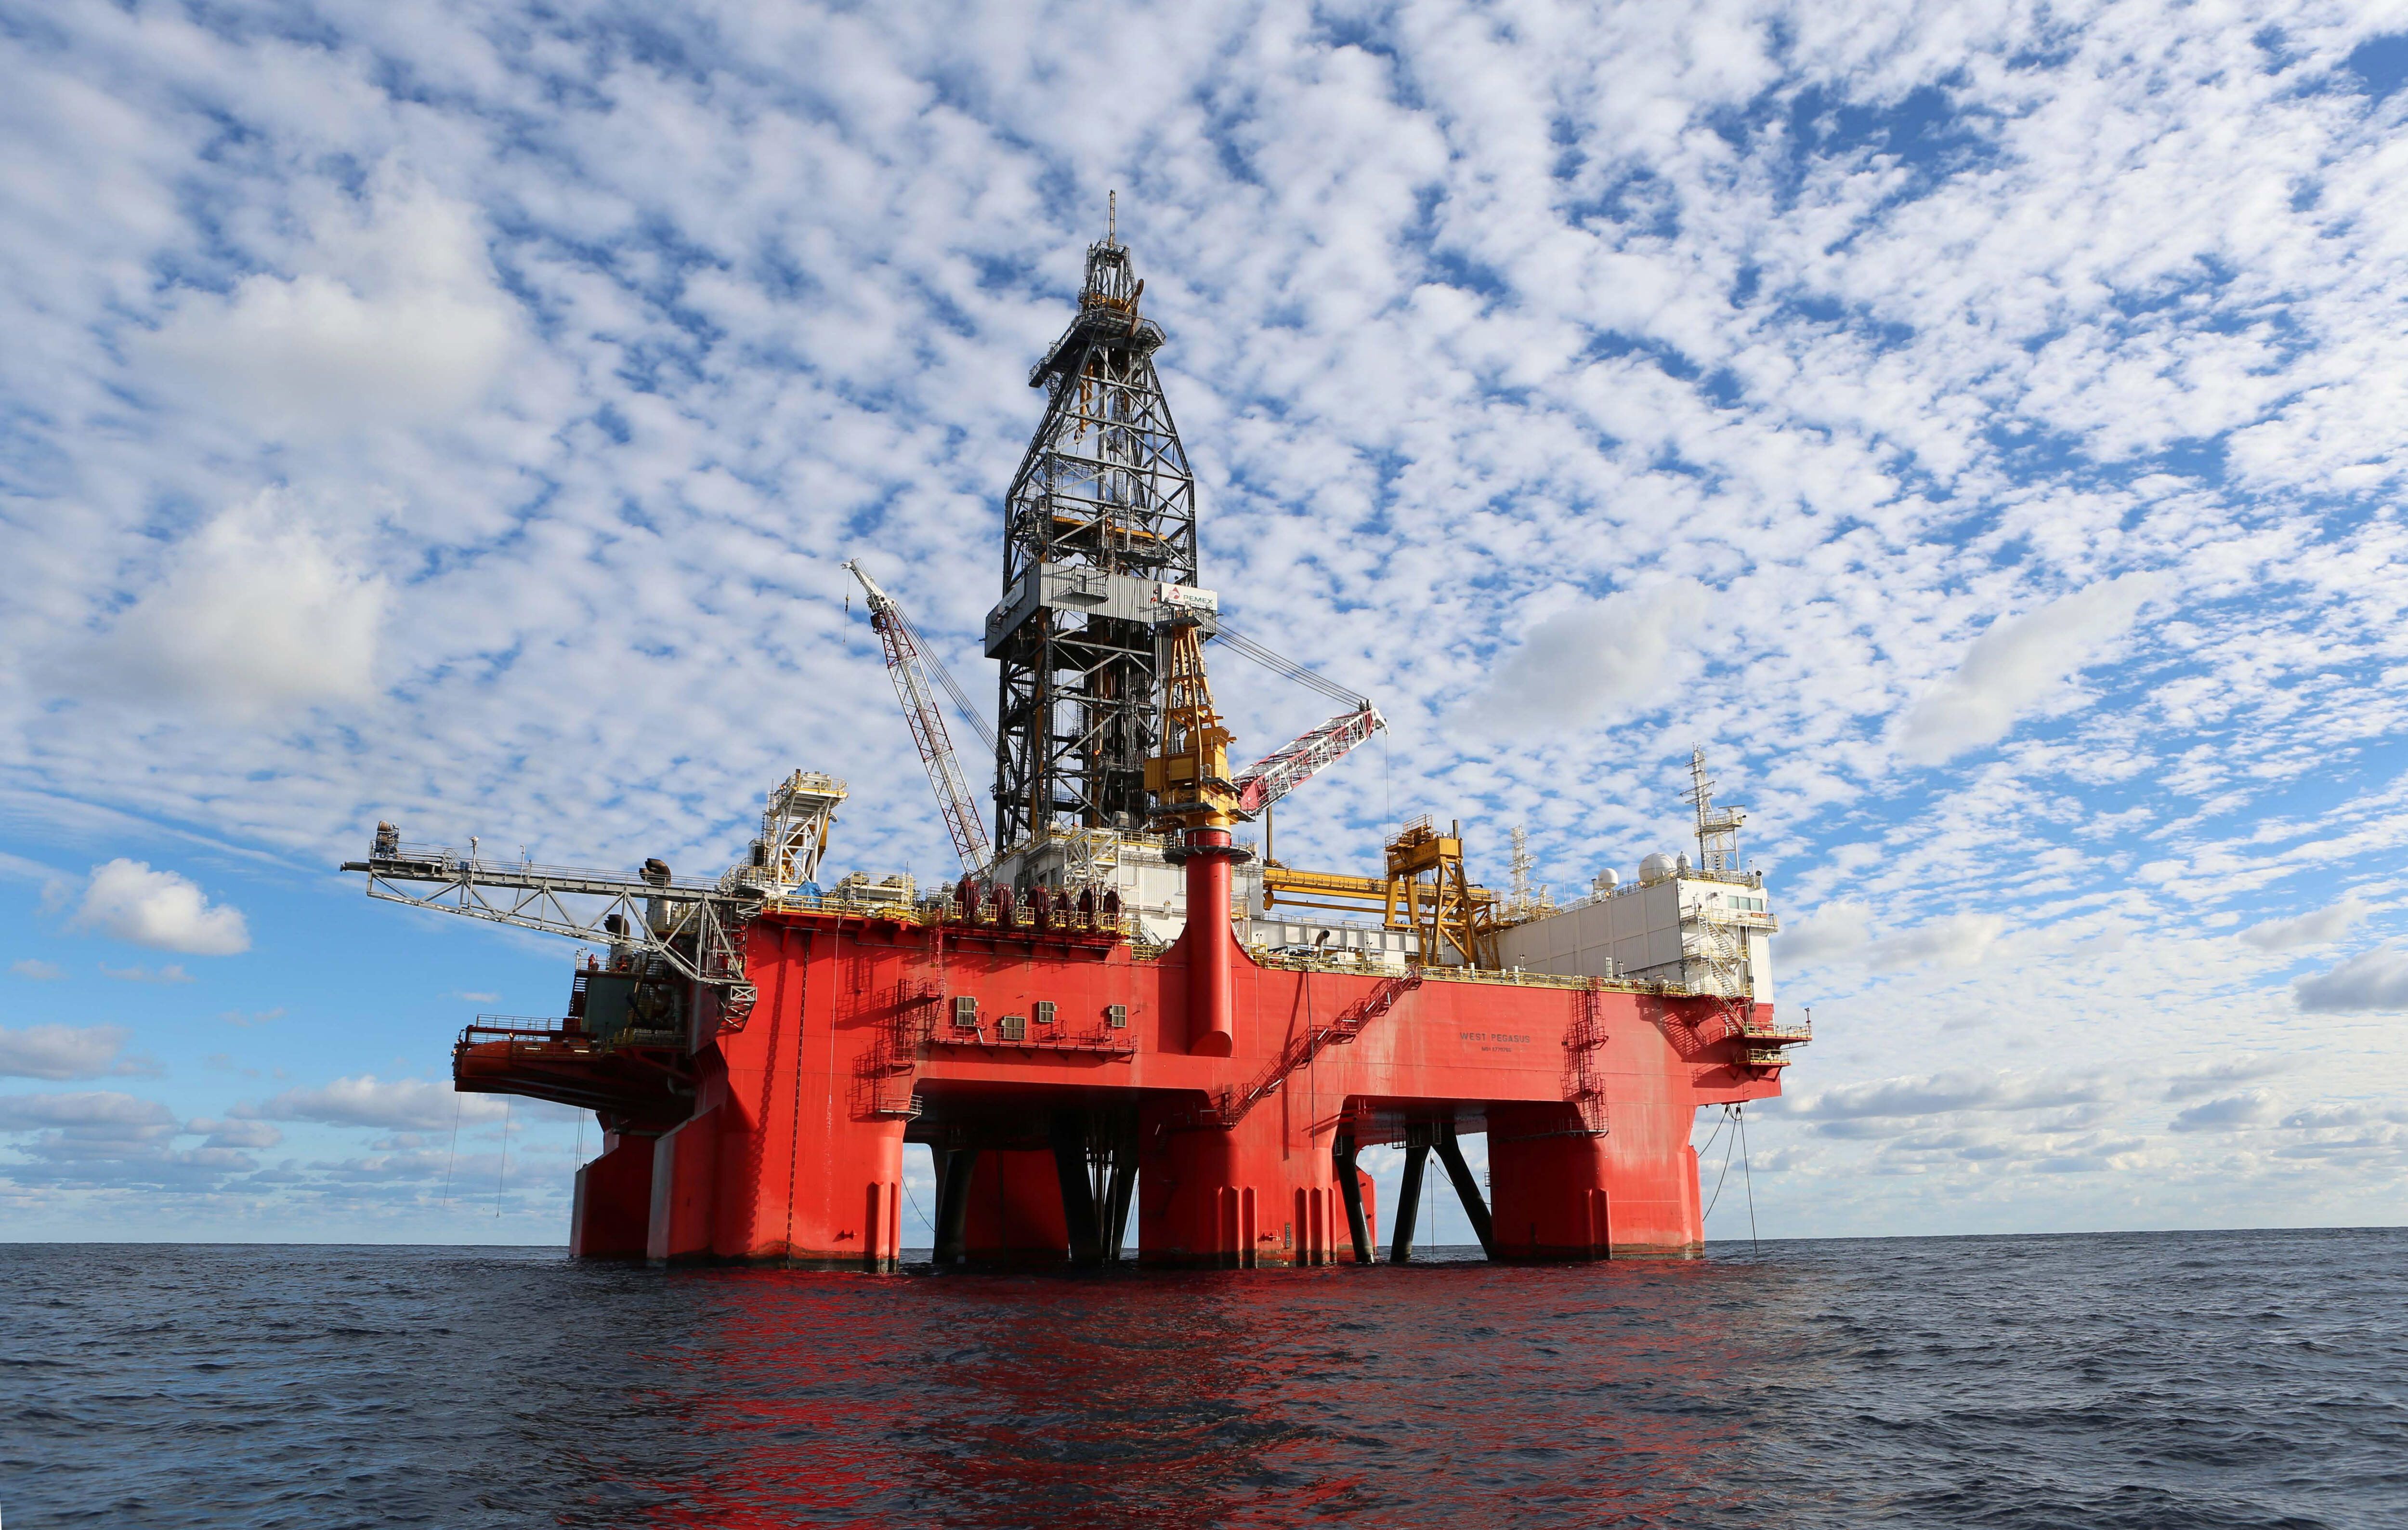 Fotografía cedida por la empresa Petróleos Mexicanos (PEMEX) de la Plataforma West Pegasus de aguas profundas en el Golfo de México. EFE/PEMEX/SOLO USO EDITORIAL 